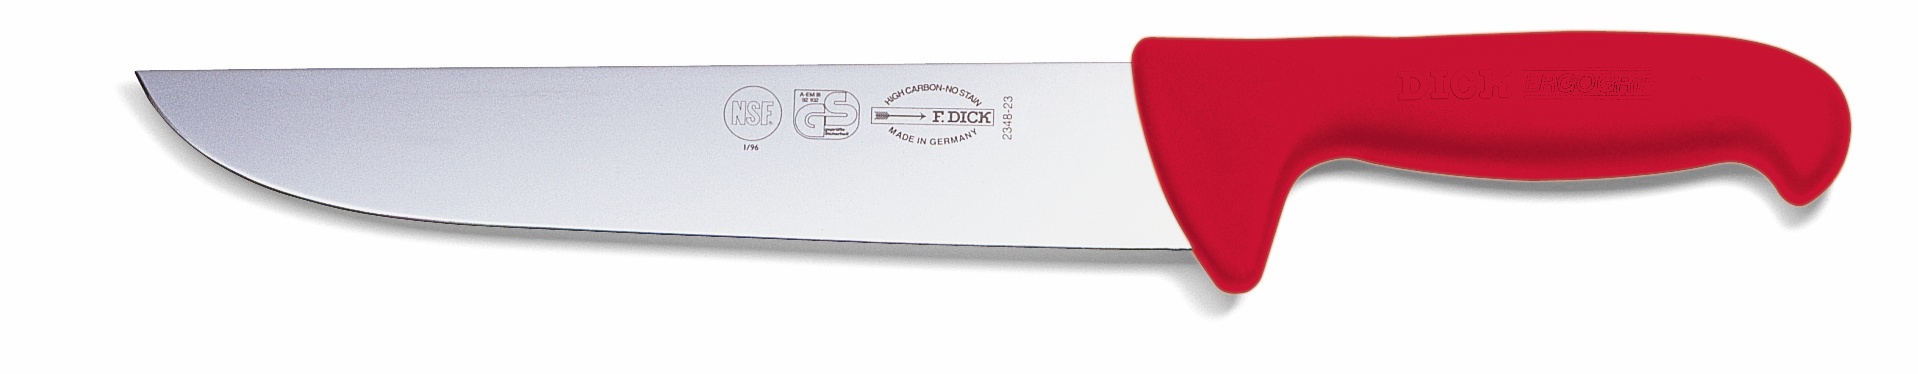 Blokový nůž, červený v délce 23 cm